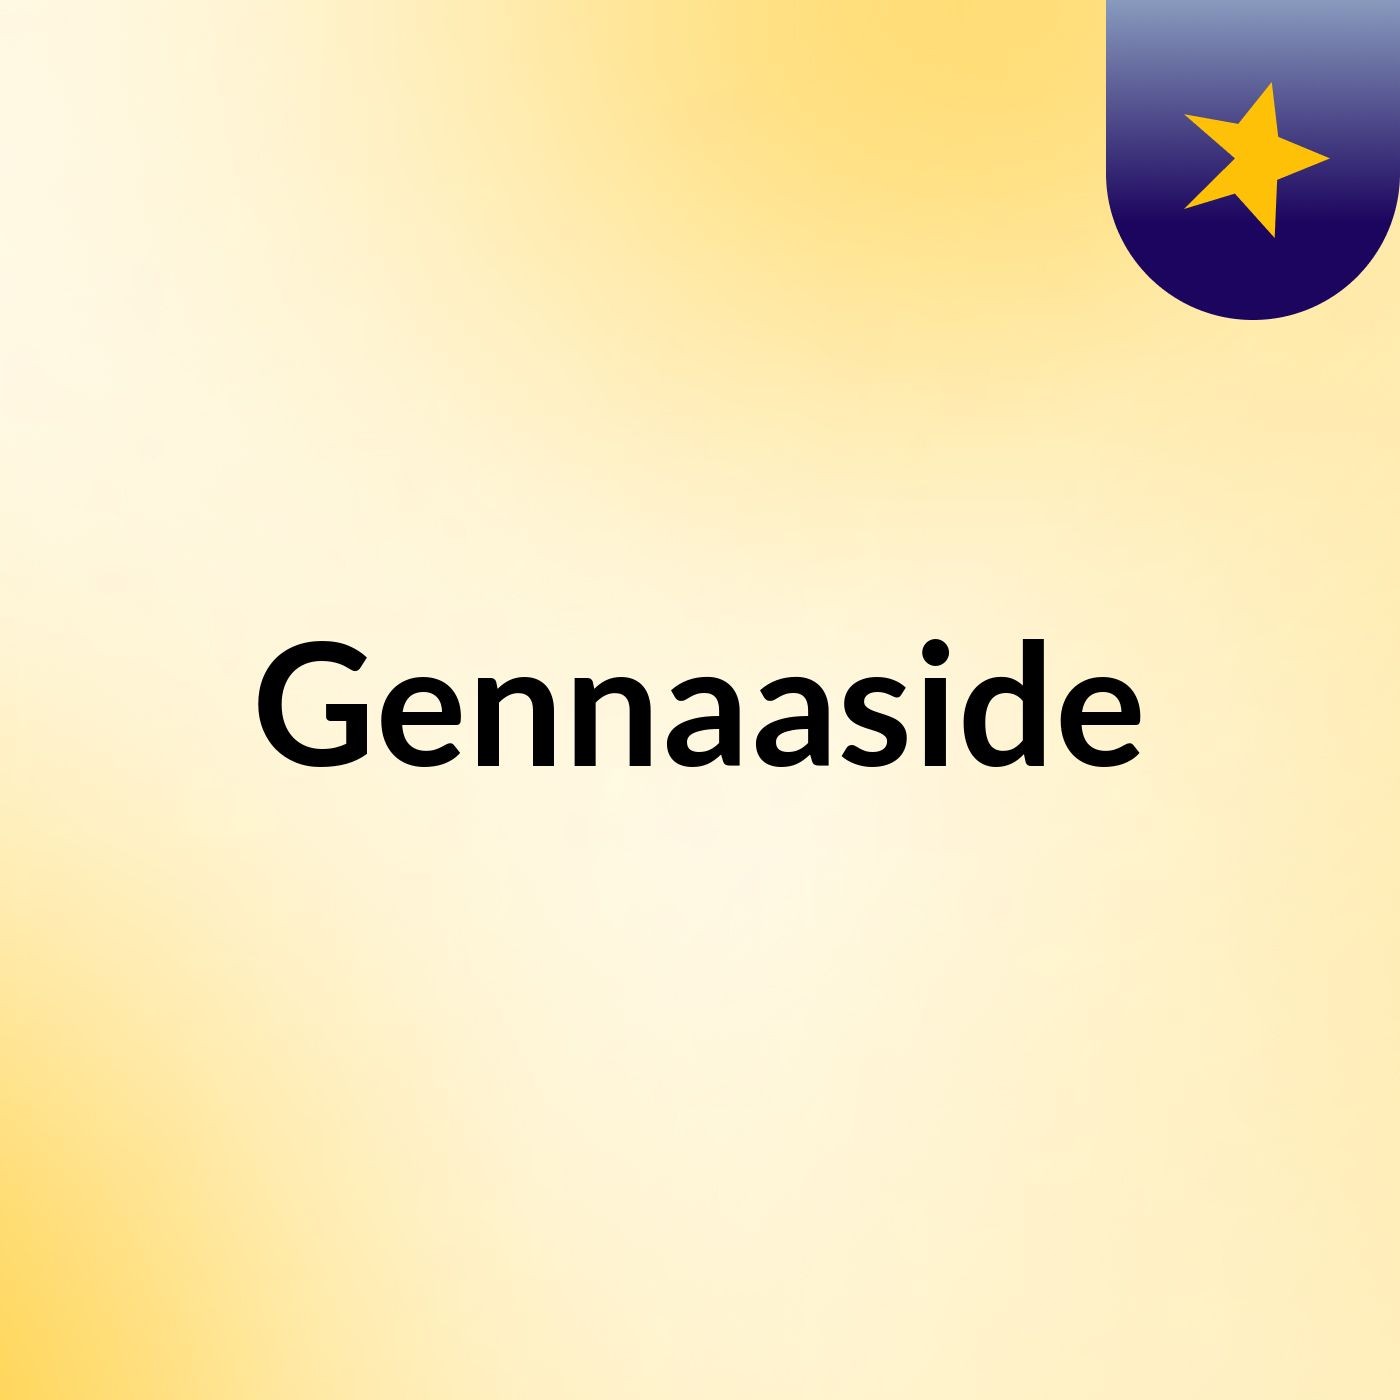 Episode 5 - Gennaaside